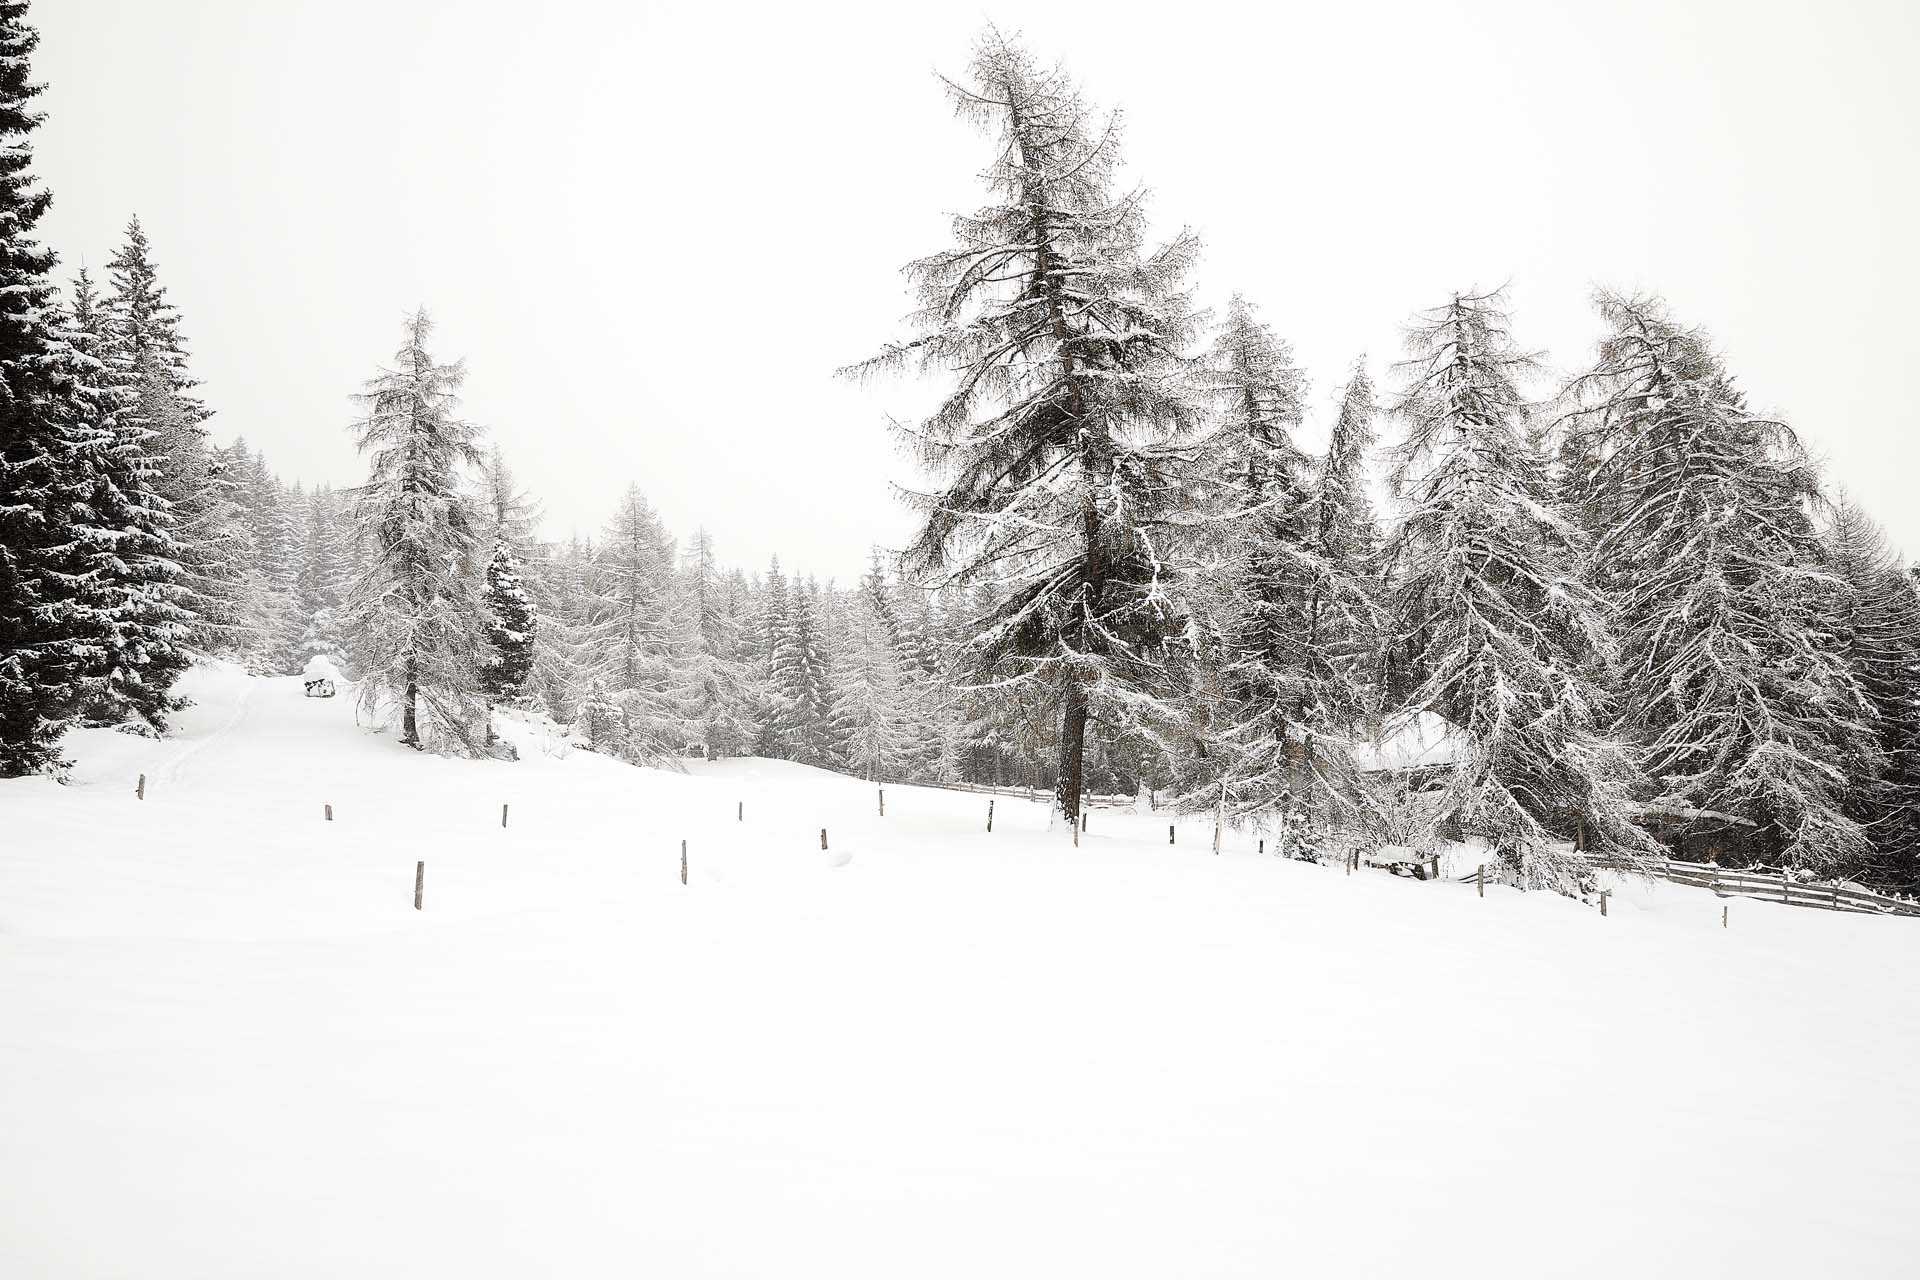 Passeggiata Feud Renon con la neve